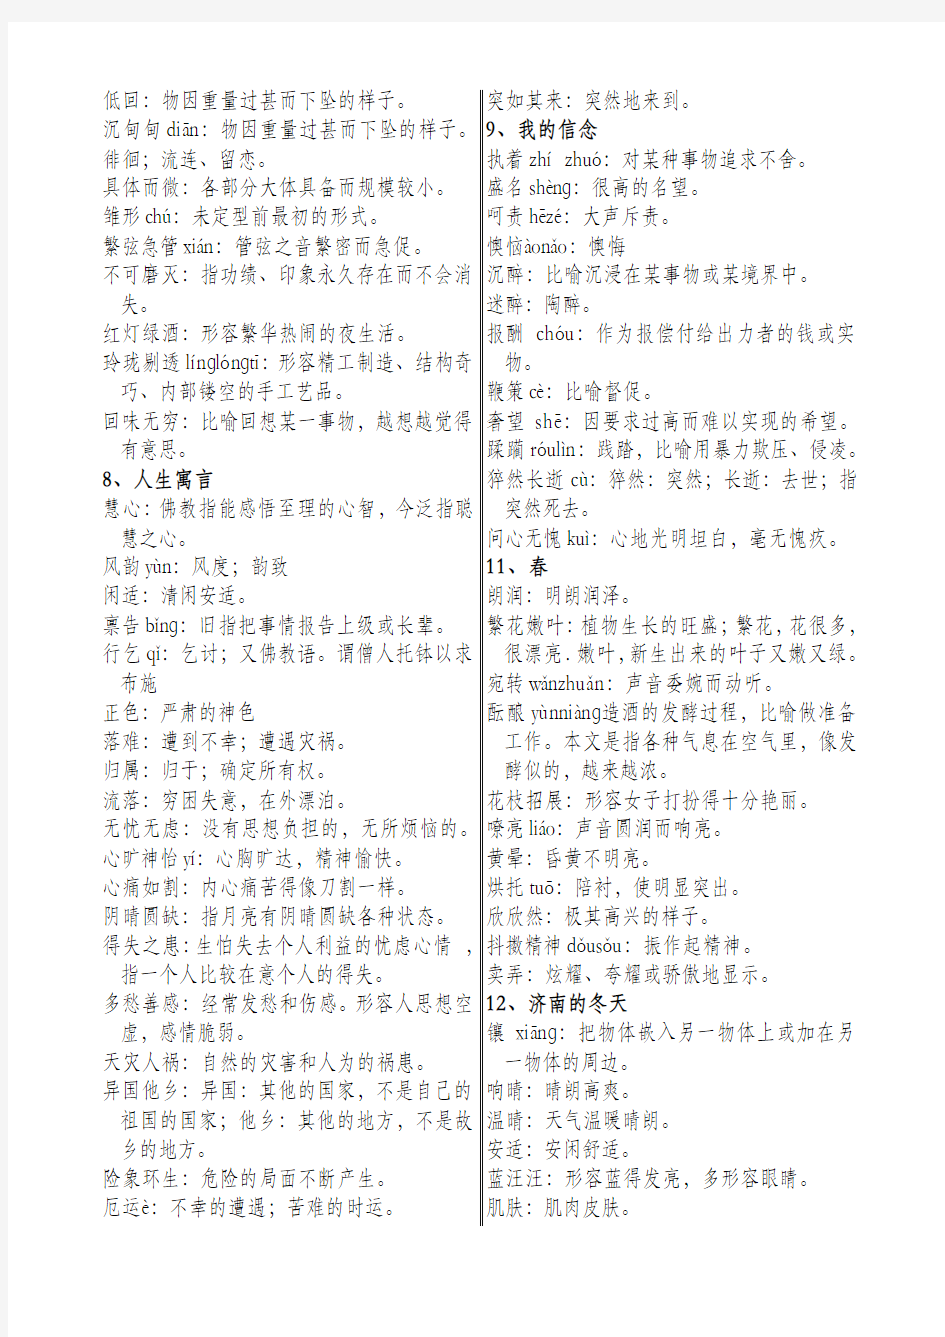 人教版初中语文全六册课后字词注音和解释汇总